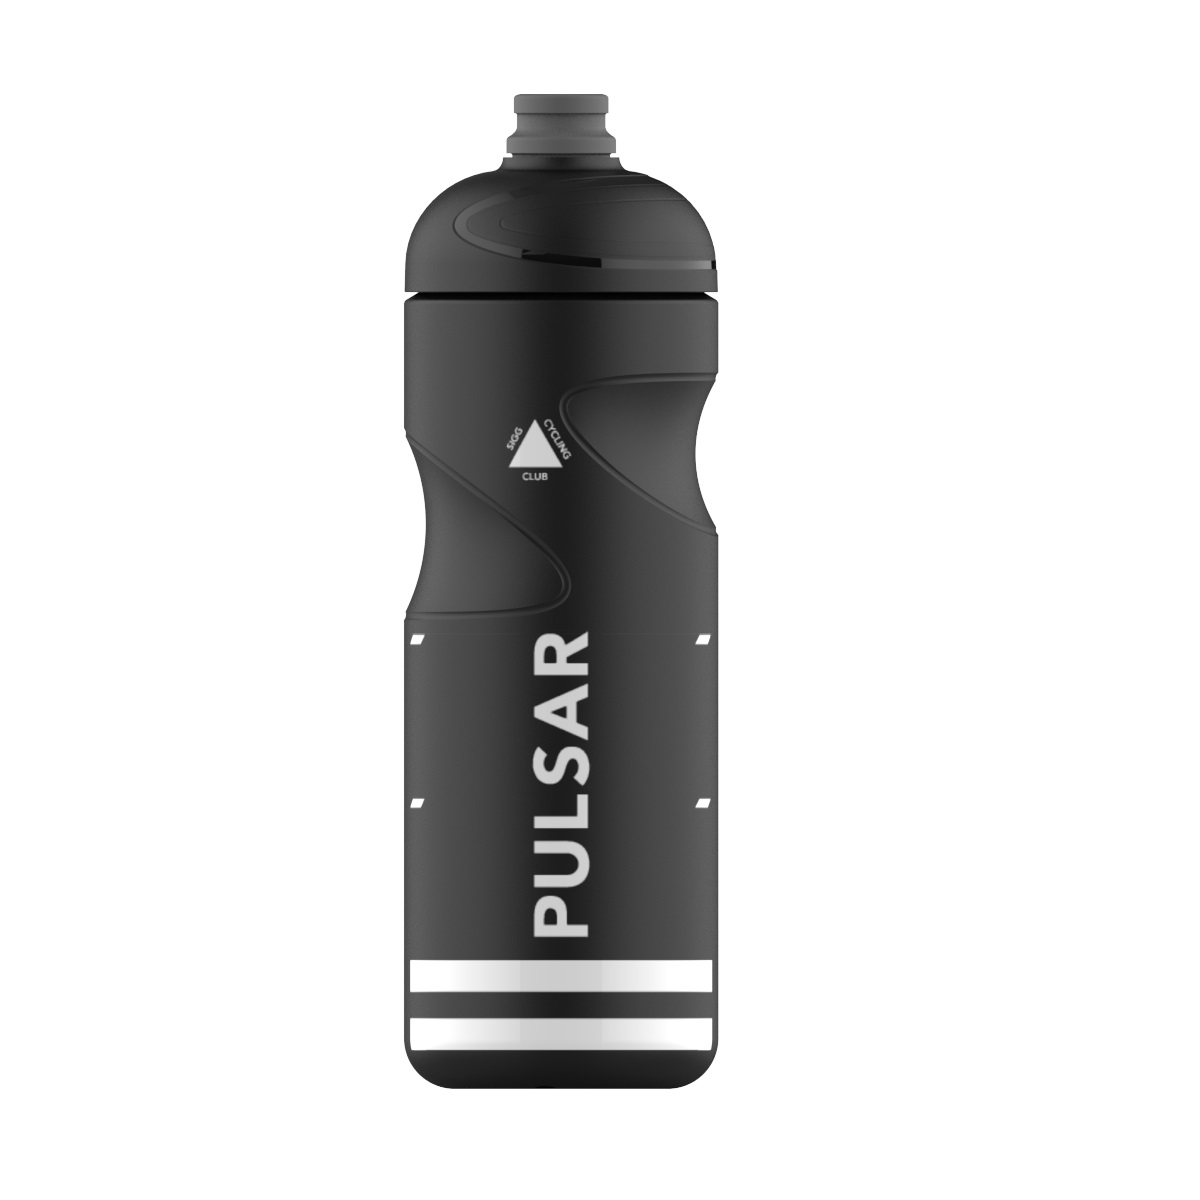 Bottle Pulsar Black 0.75 L Sigg